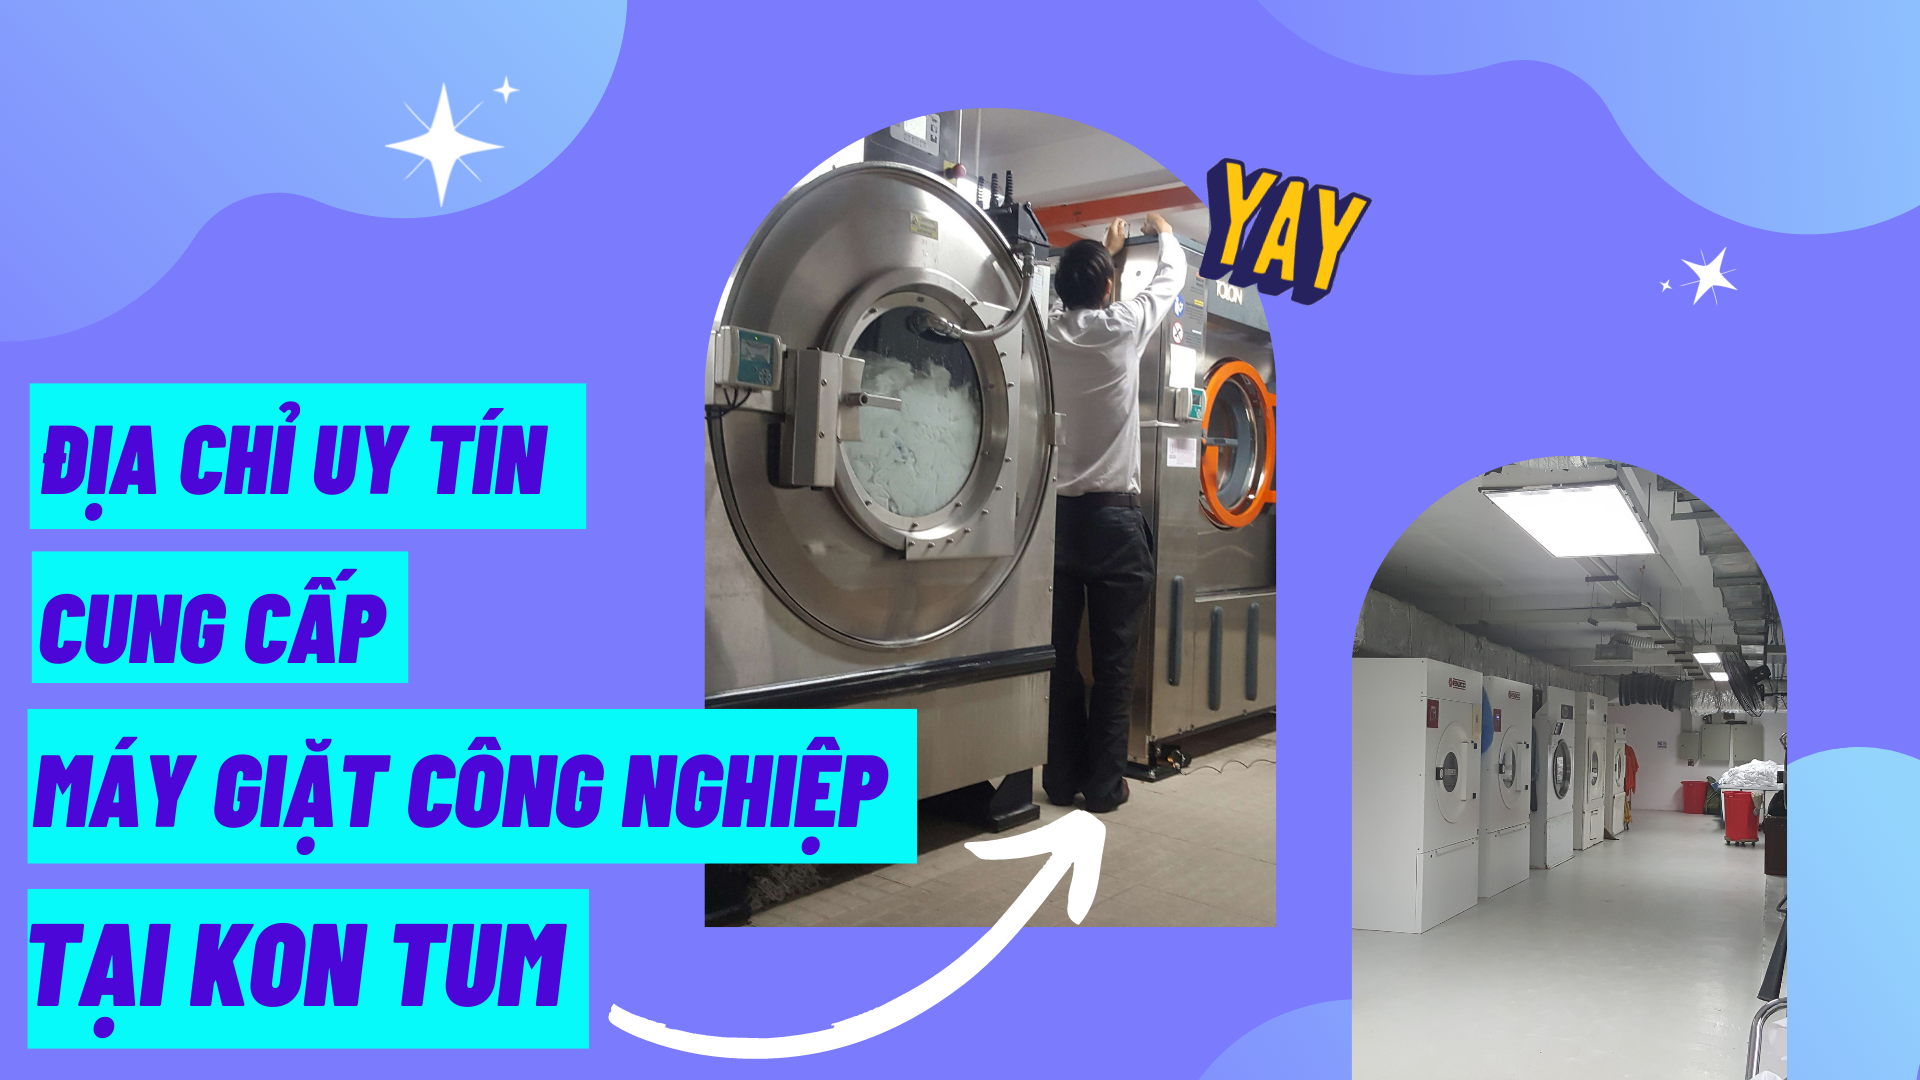 Địa chỉ uy tín cung cấp máy giặt công nghiệp tại Kon Tum